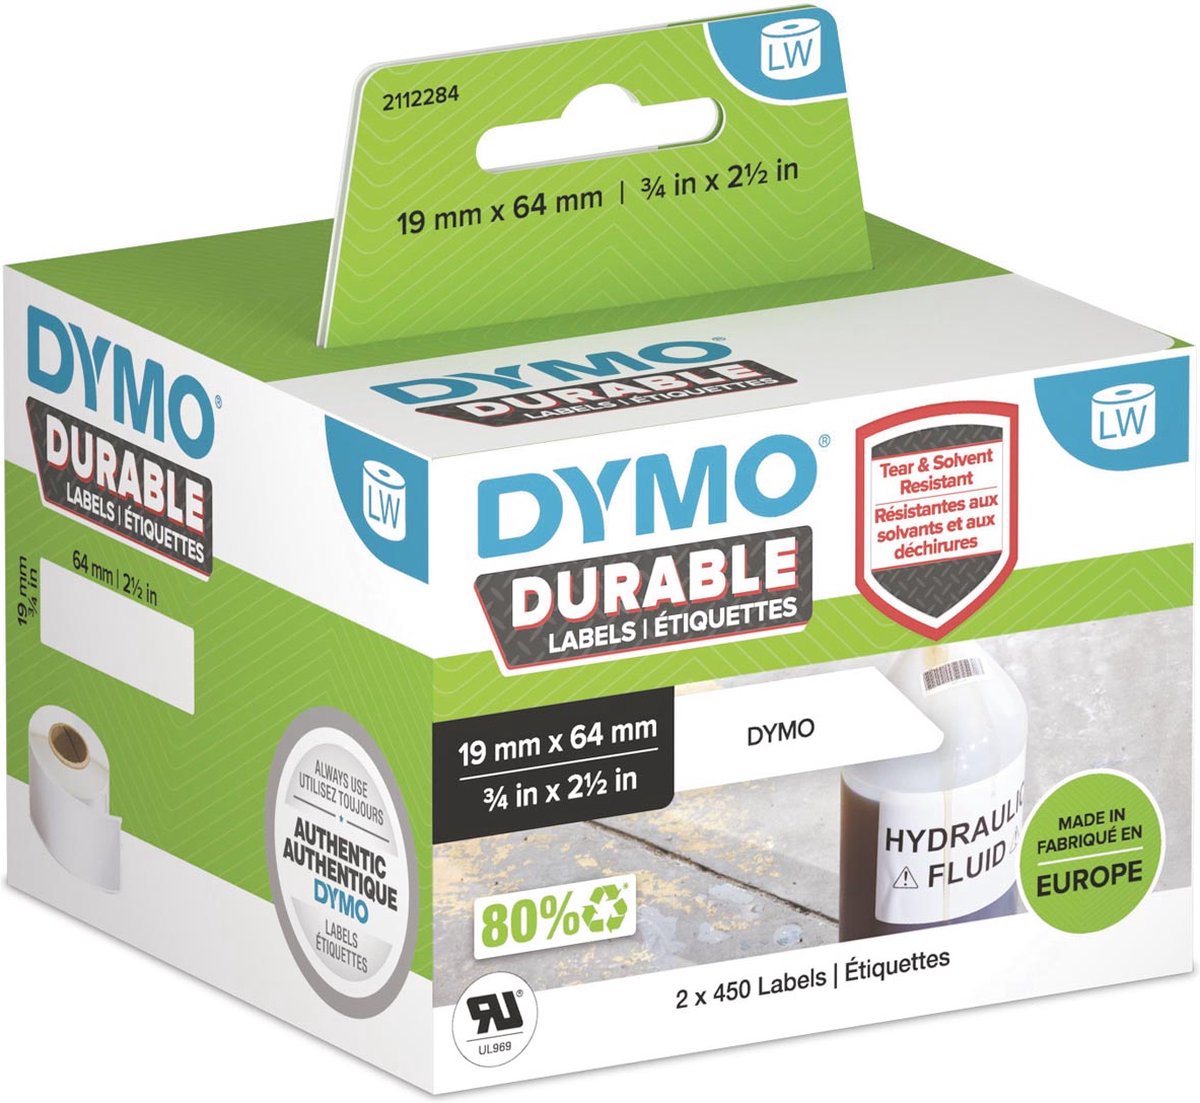 Dymo ® LabelWriter™ 5XL, Imprimante d'étiquettes Noir/gris